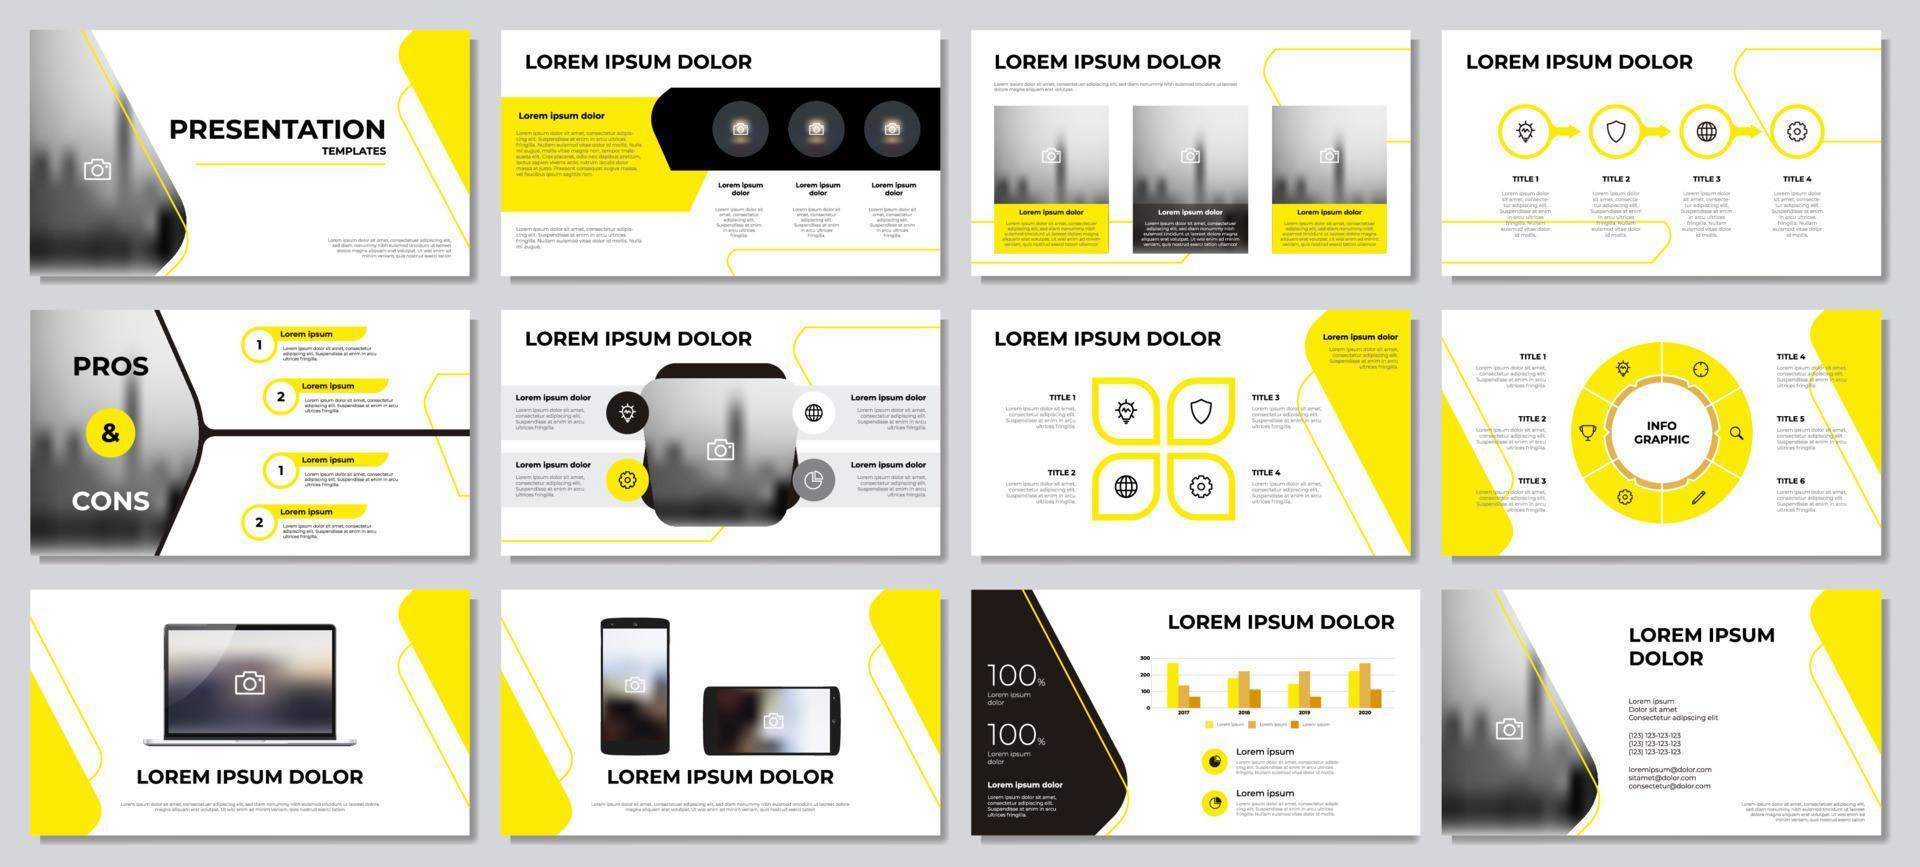 plantillas de presentación elemento infográfico amarillo y negro con fondo blanco. vector de plantilla de diseño para negocios, marketing, etc.